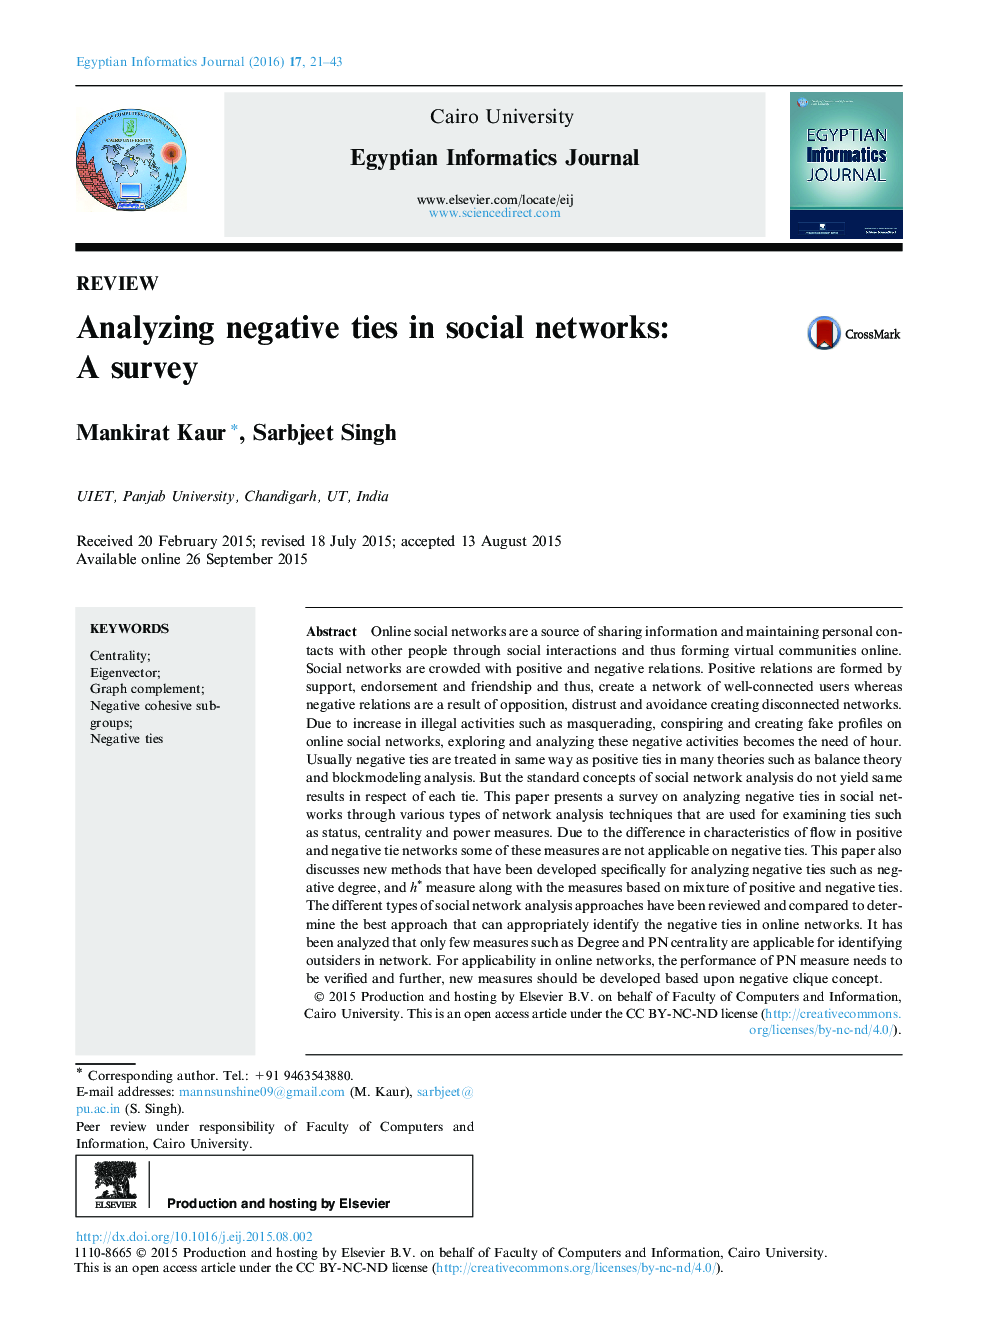 تجزیه و تحلیل روابط منفی در شبکه های اجتماعی: یک نظرسنجی 